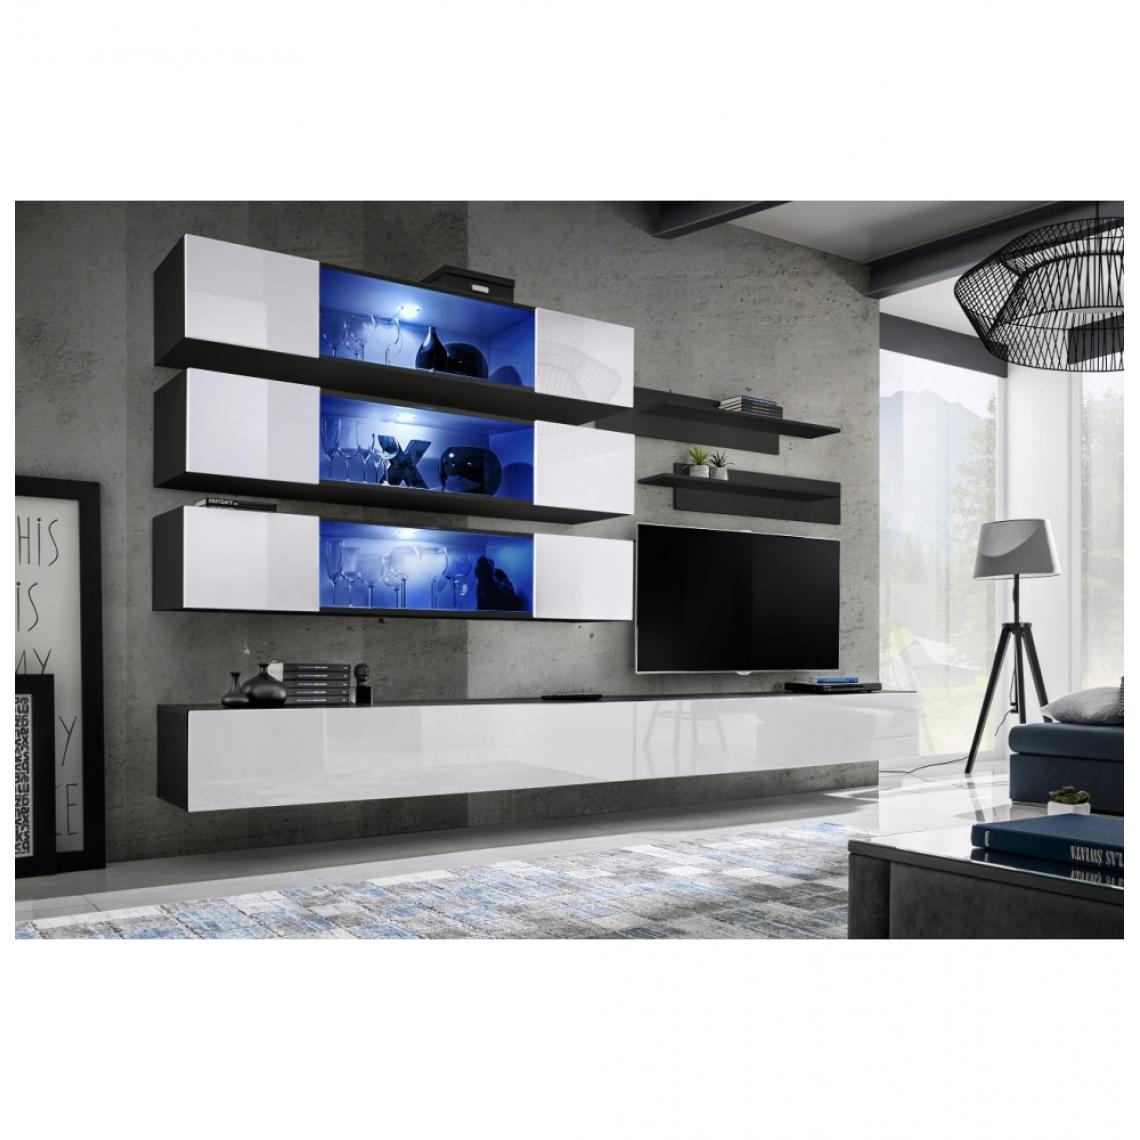 Ac-Deco - Ensemble mural - FLY J - 3 rangements LED - 2 meubles TV - 2 étagères - Noir et blanc - Modèle 2 - Meubles TV, Hi-Fi